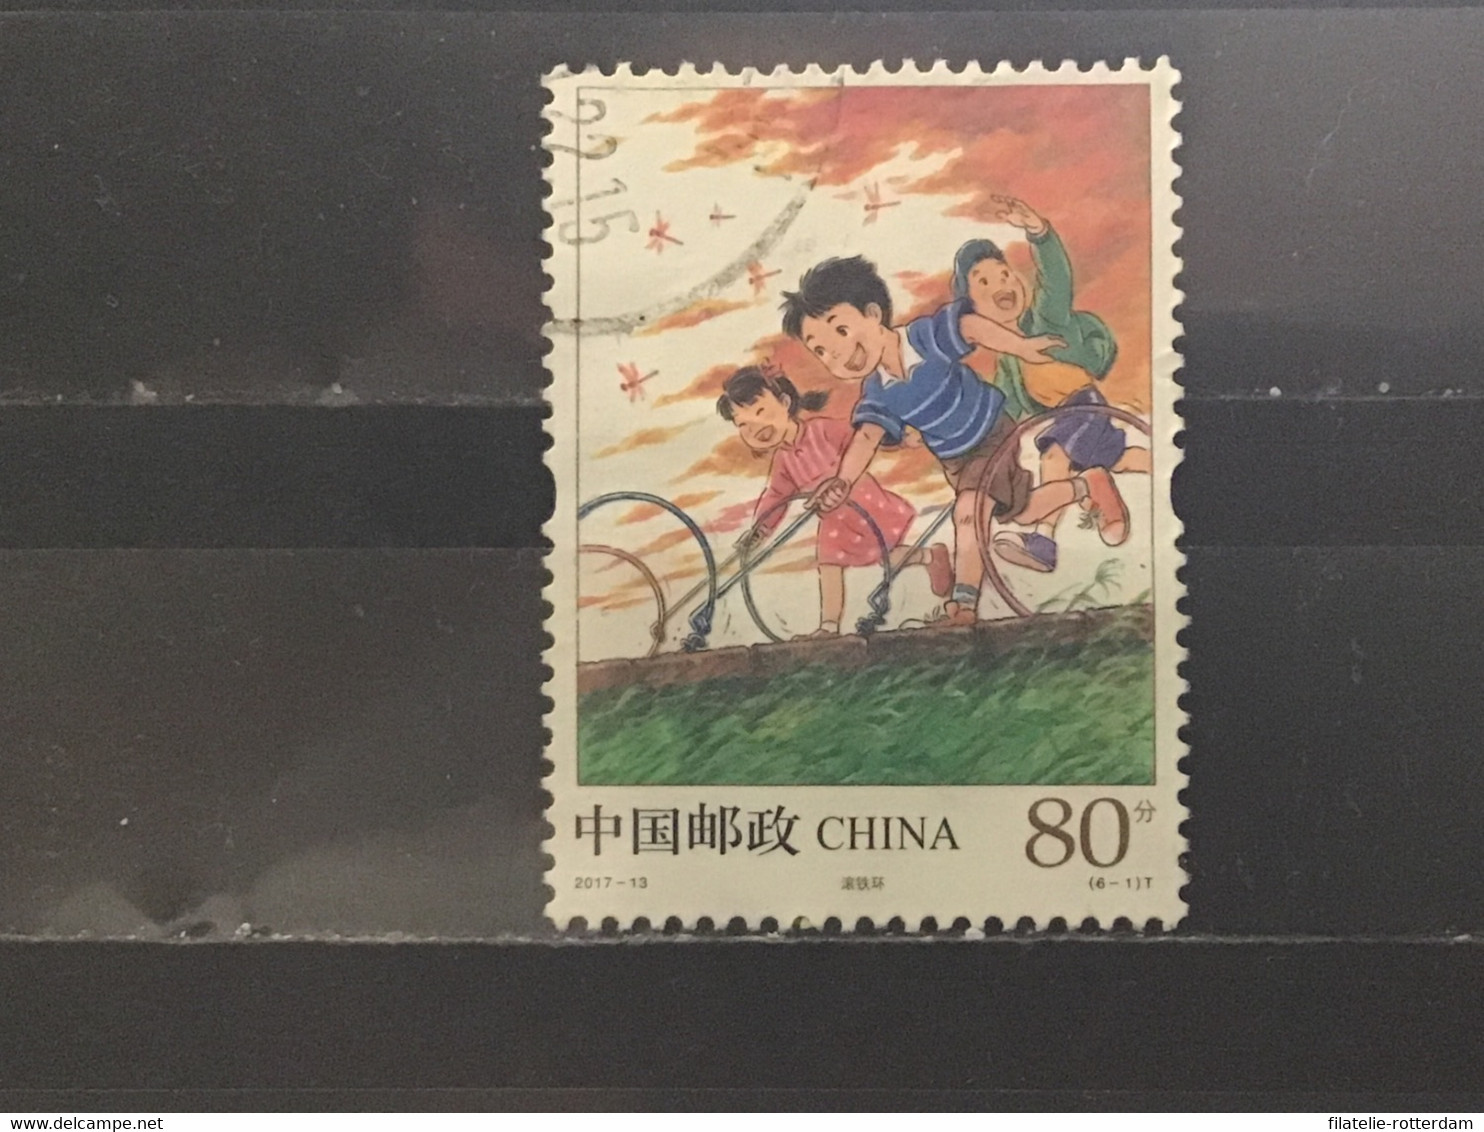 China - Kinderspelen (80) 2017 - Oblitérés